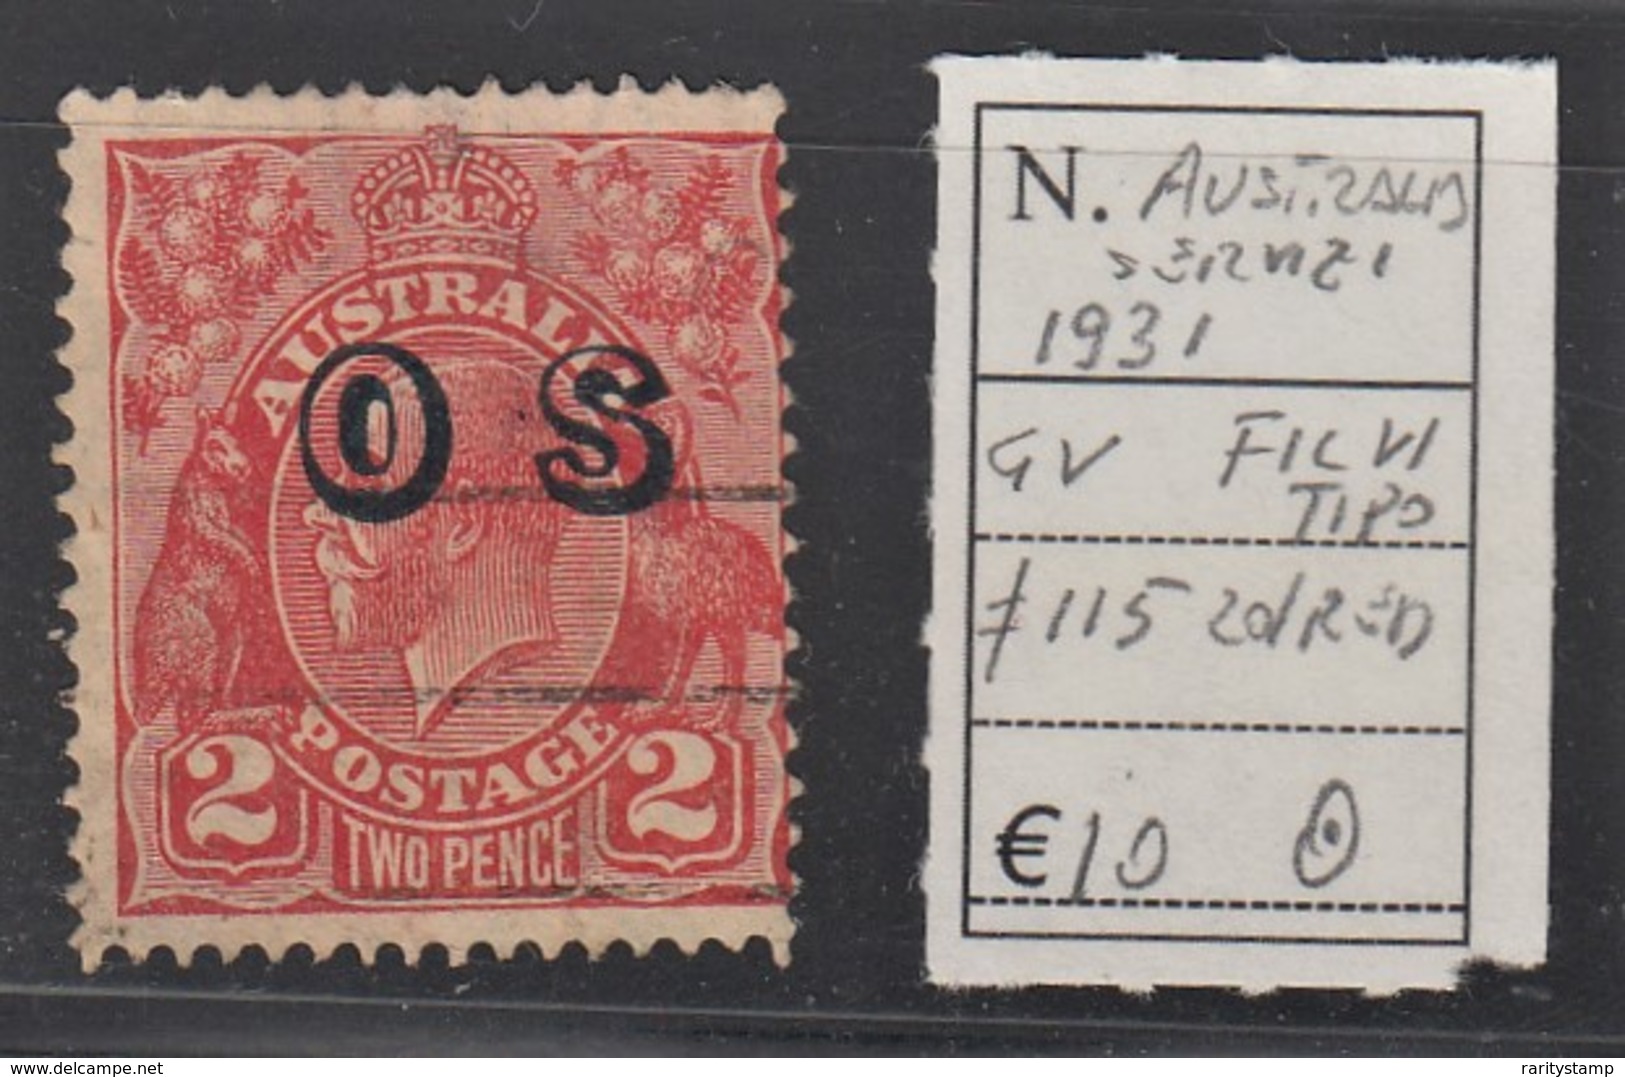 AUSTRALIA 1931 SERVIZI 2D RED N. 115 FIL. VI TIPO - Oficiales